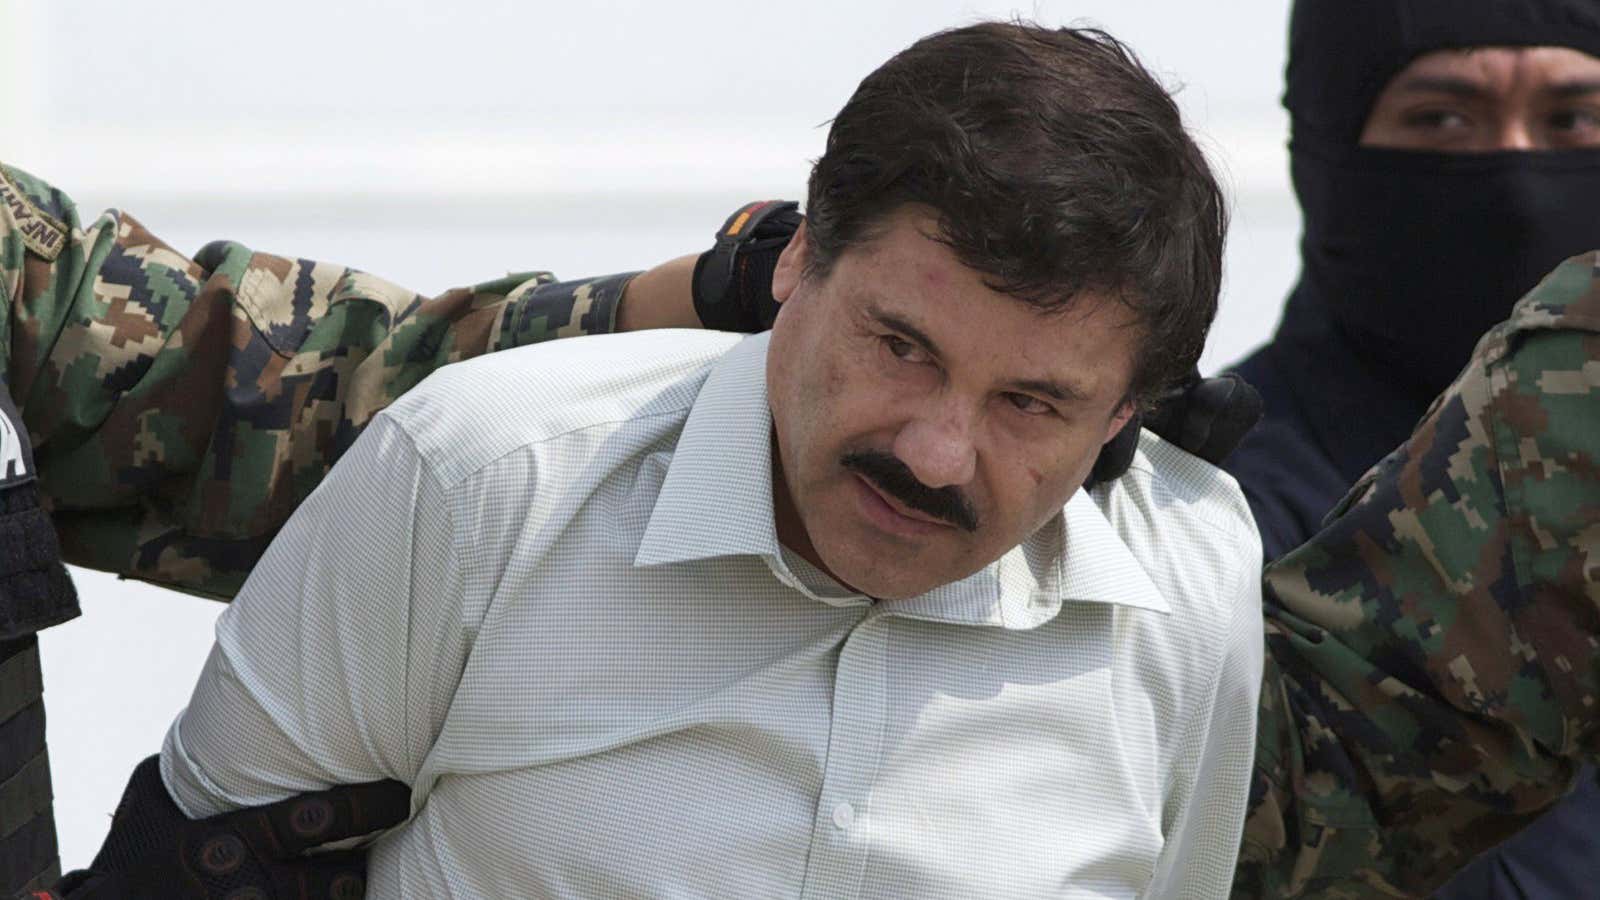 Things are looking bleak for El Chapo.